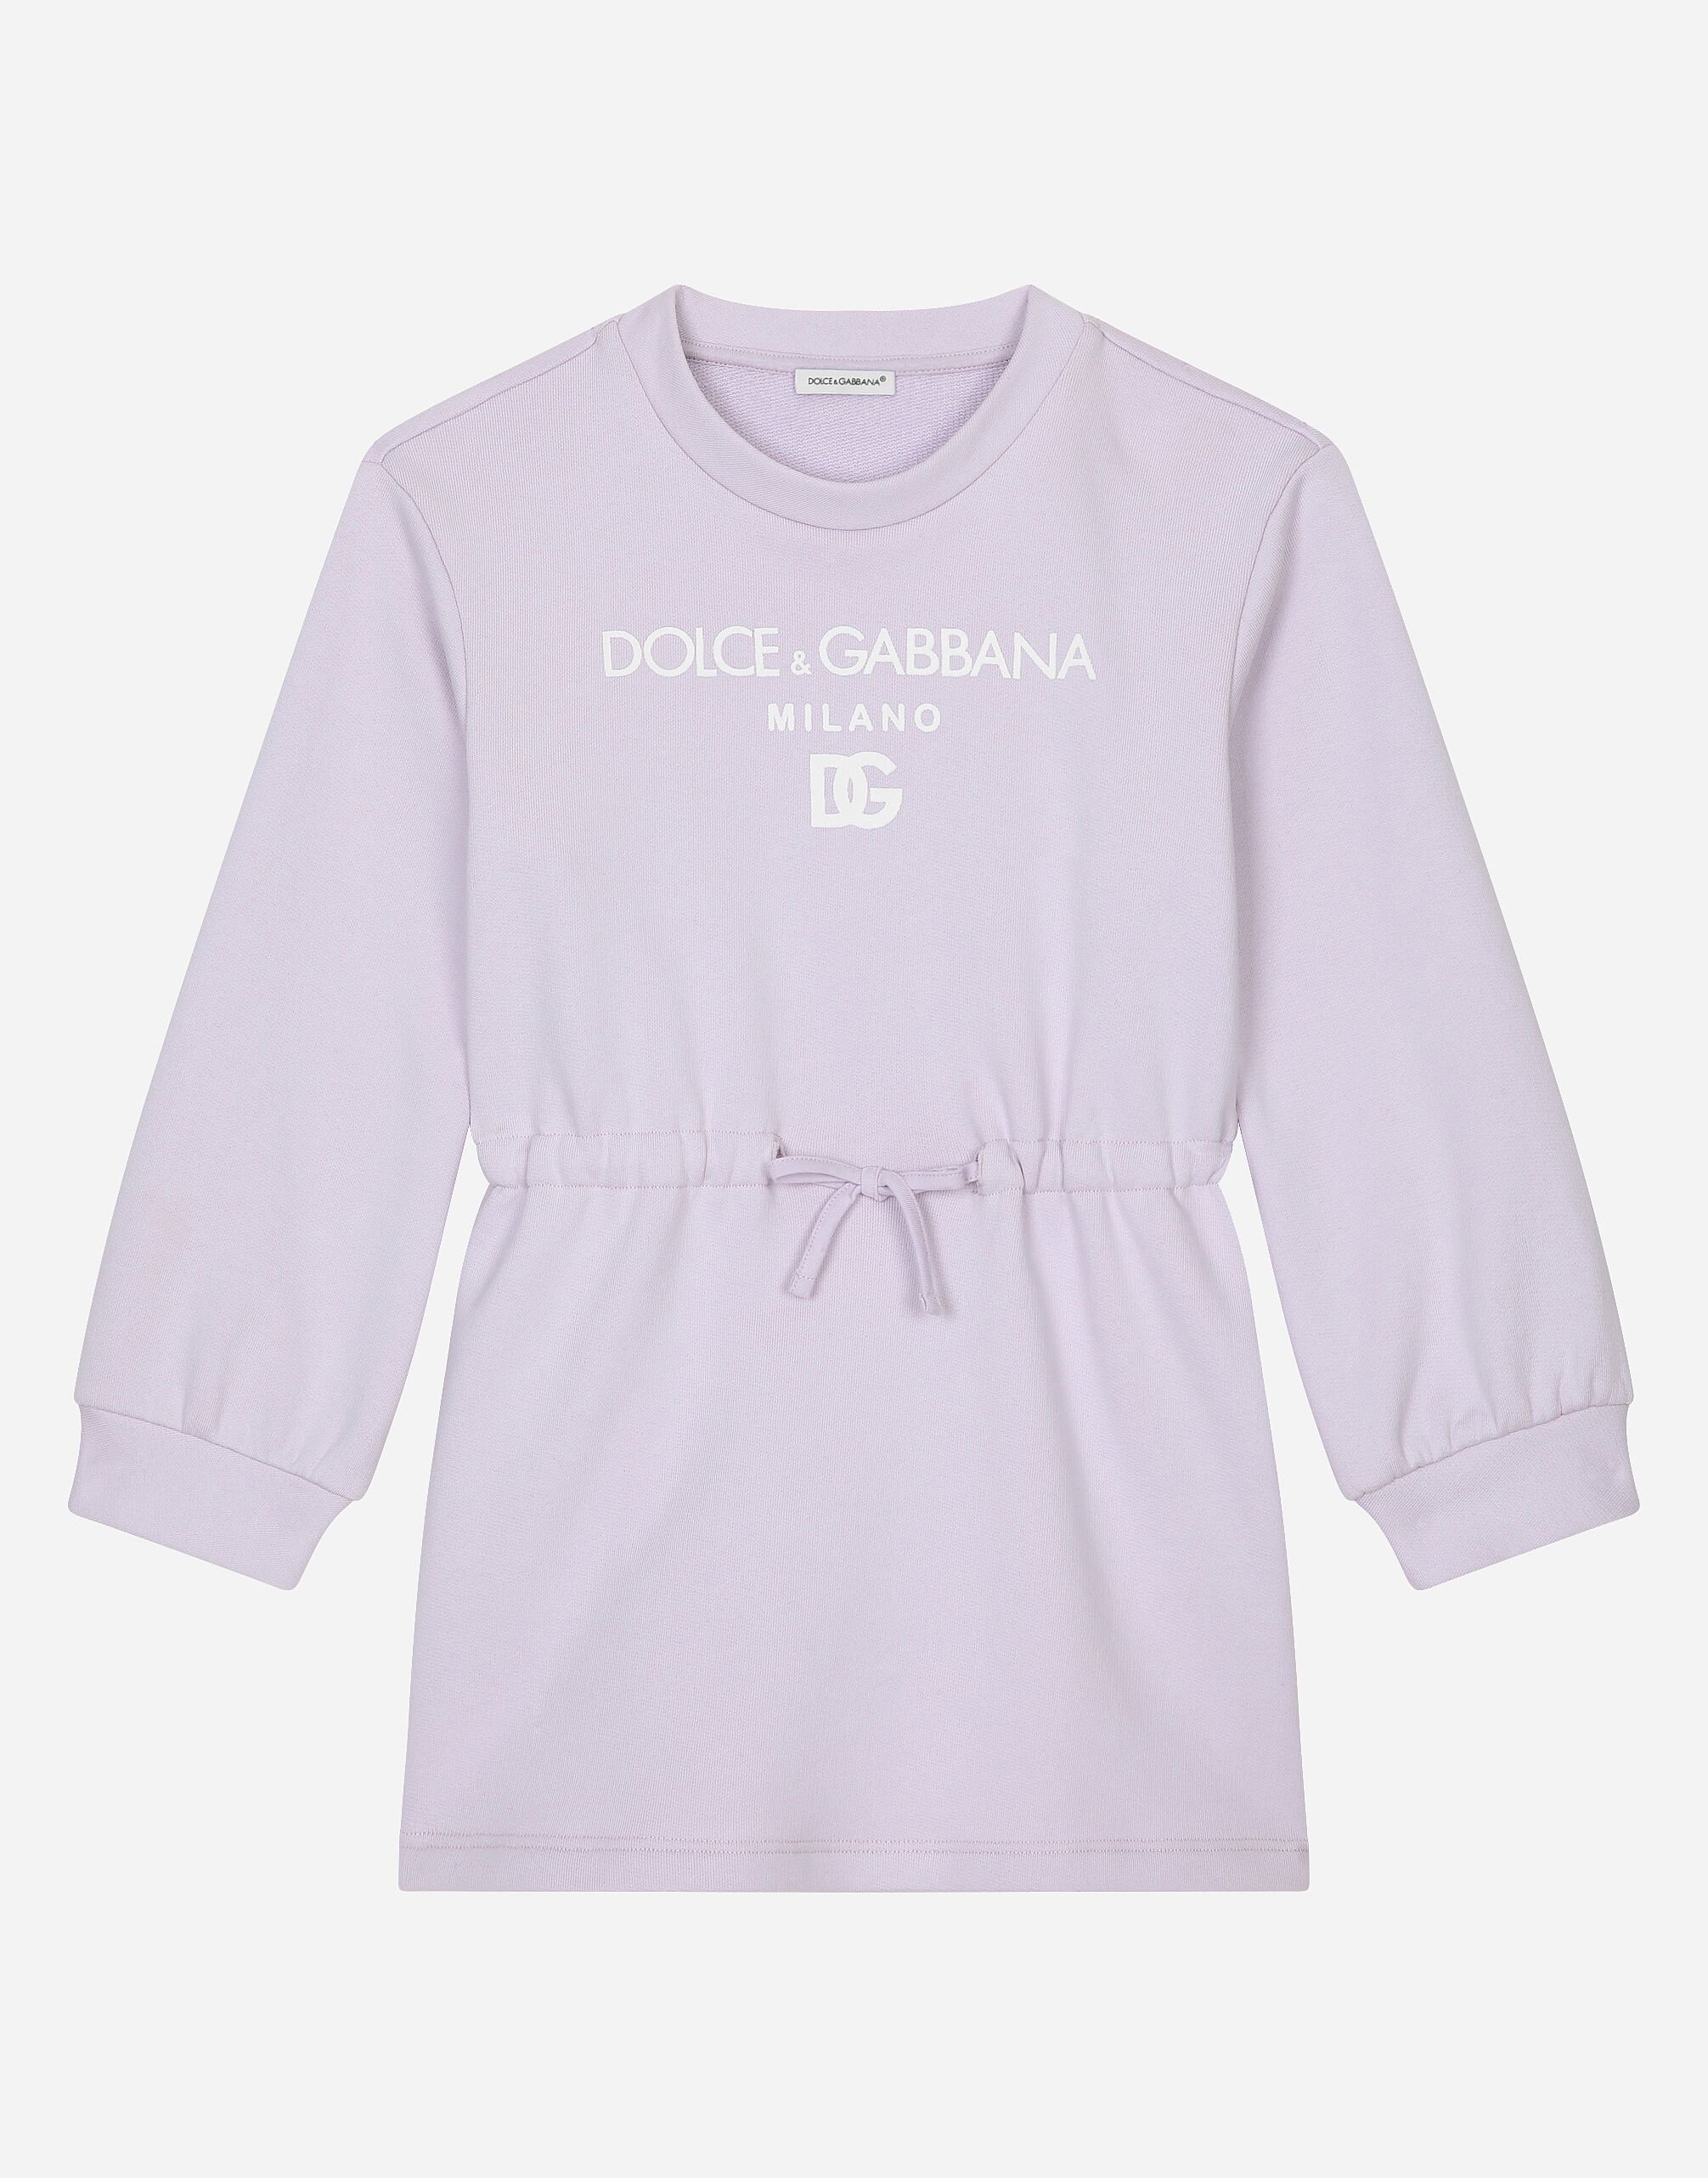 Dolce & Gabbana Kleid aus Jersey mit Dolce&Gabbana-Logo Drucken L53DG7G7E9W